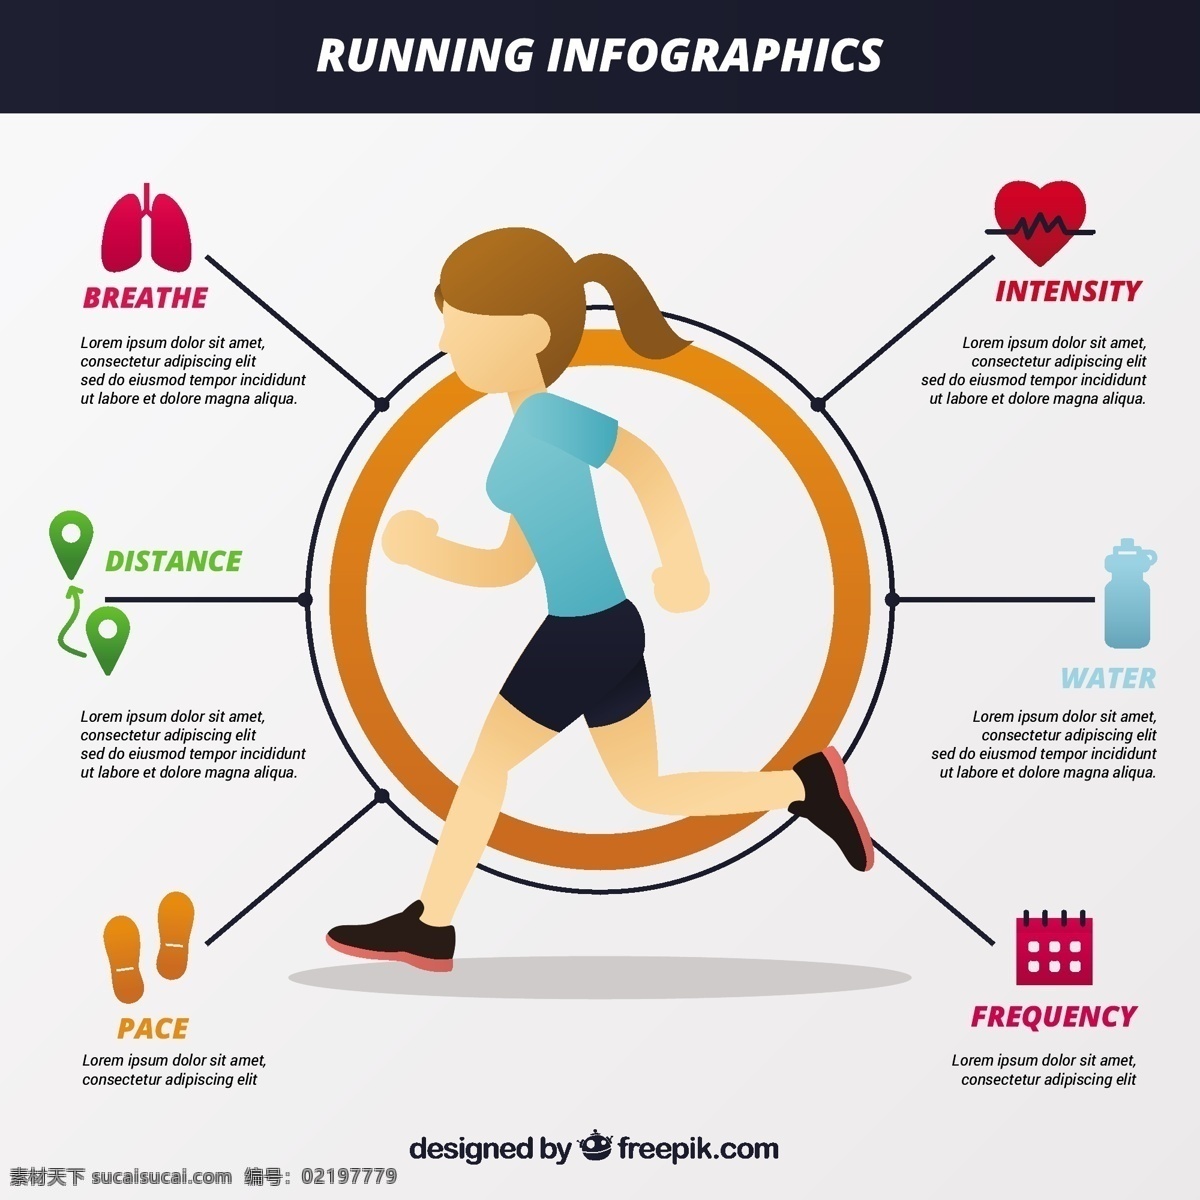 图表 元素 女孩 模板 运动 健身 健康 营销 图 体育 跑 过程中 信息图表模板 数据元素 信息 健康信息